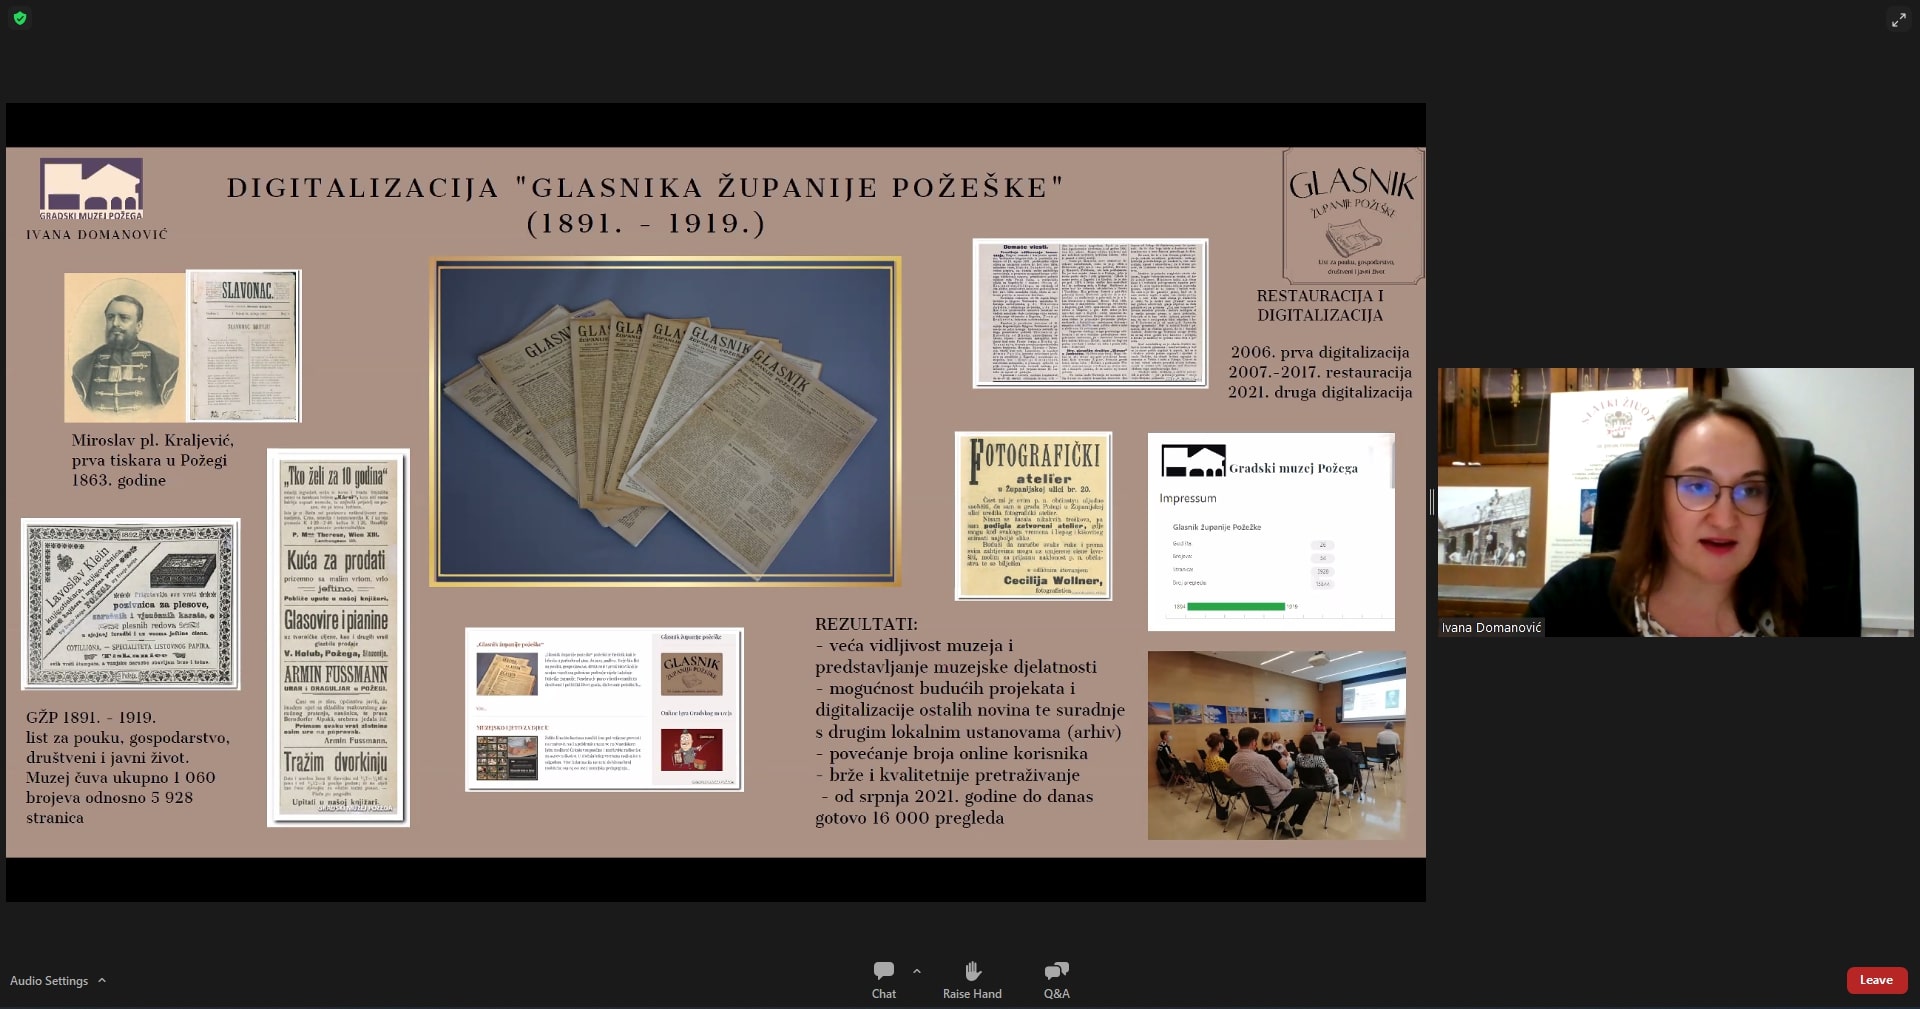 Ivana Domanović (Gradski muzej Požega): Digitalizacija Glasnika županije požeške (1891. – 1919.)